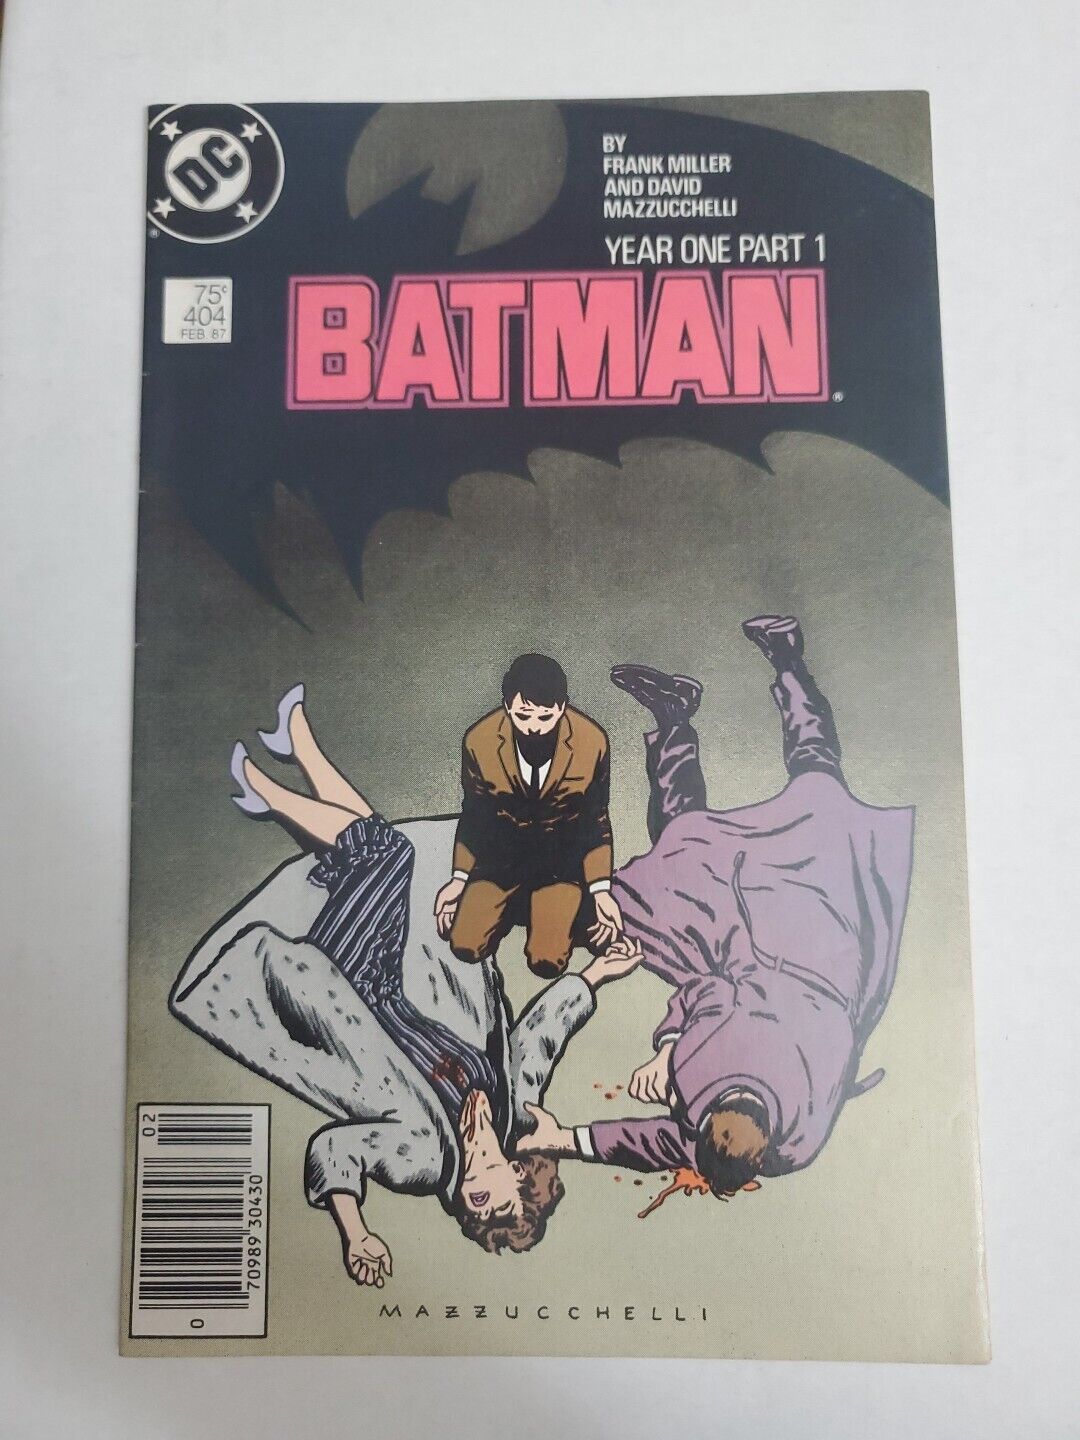 Batman #404 Year One Part 1 1987 VFN